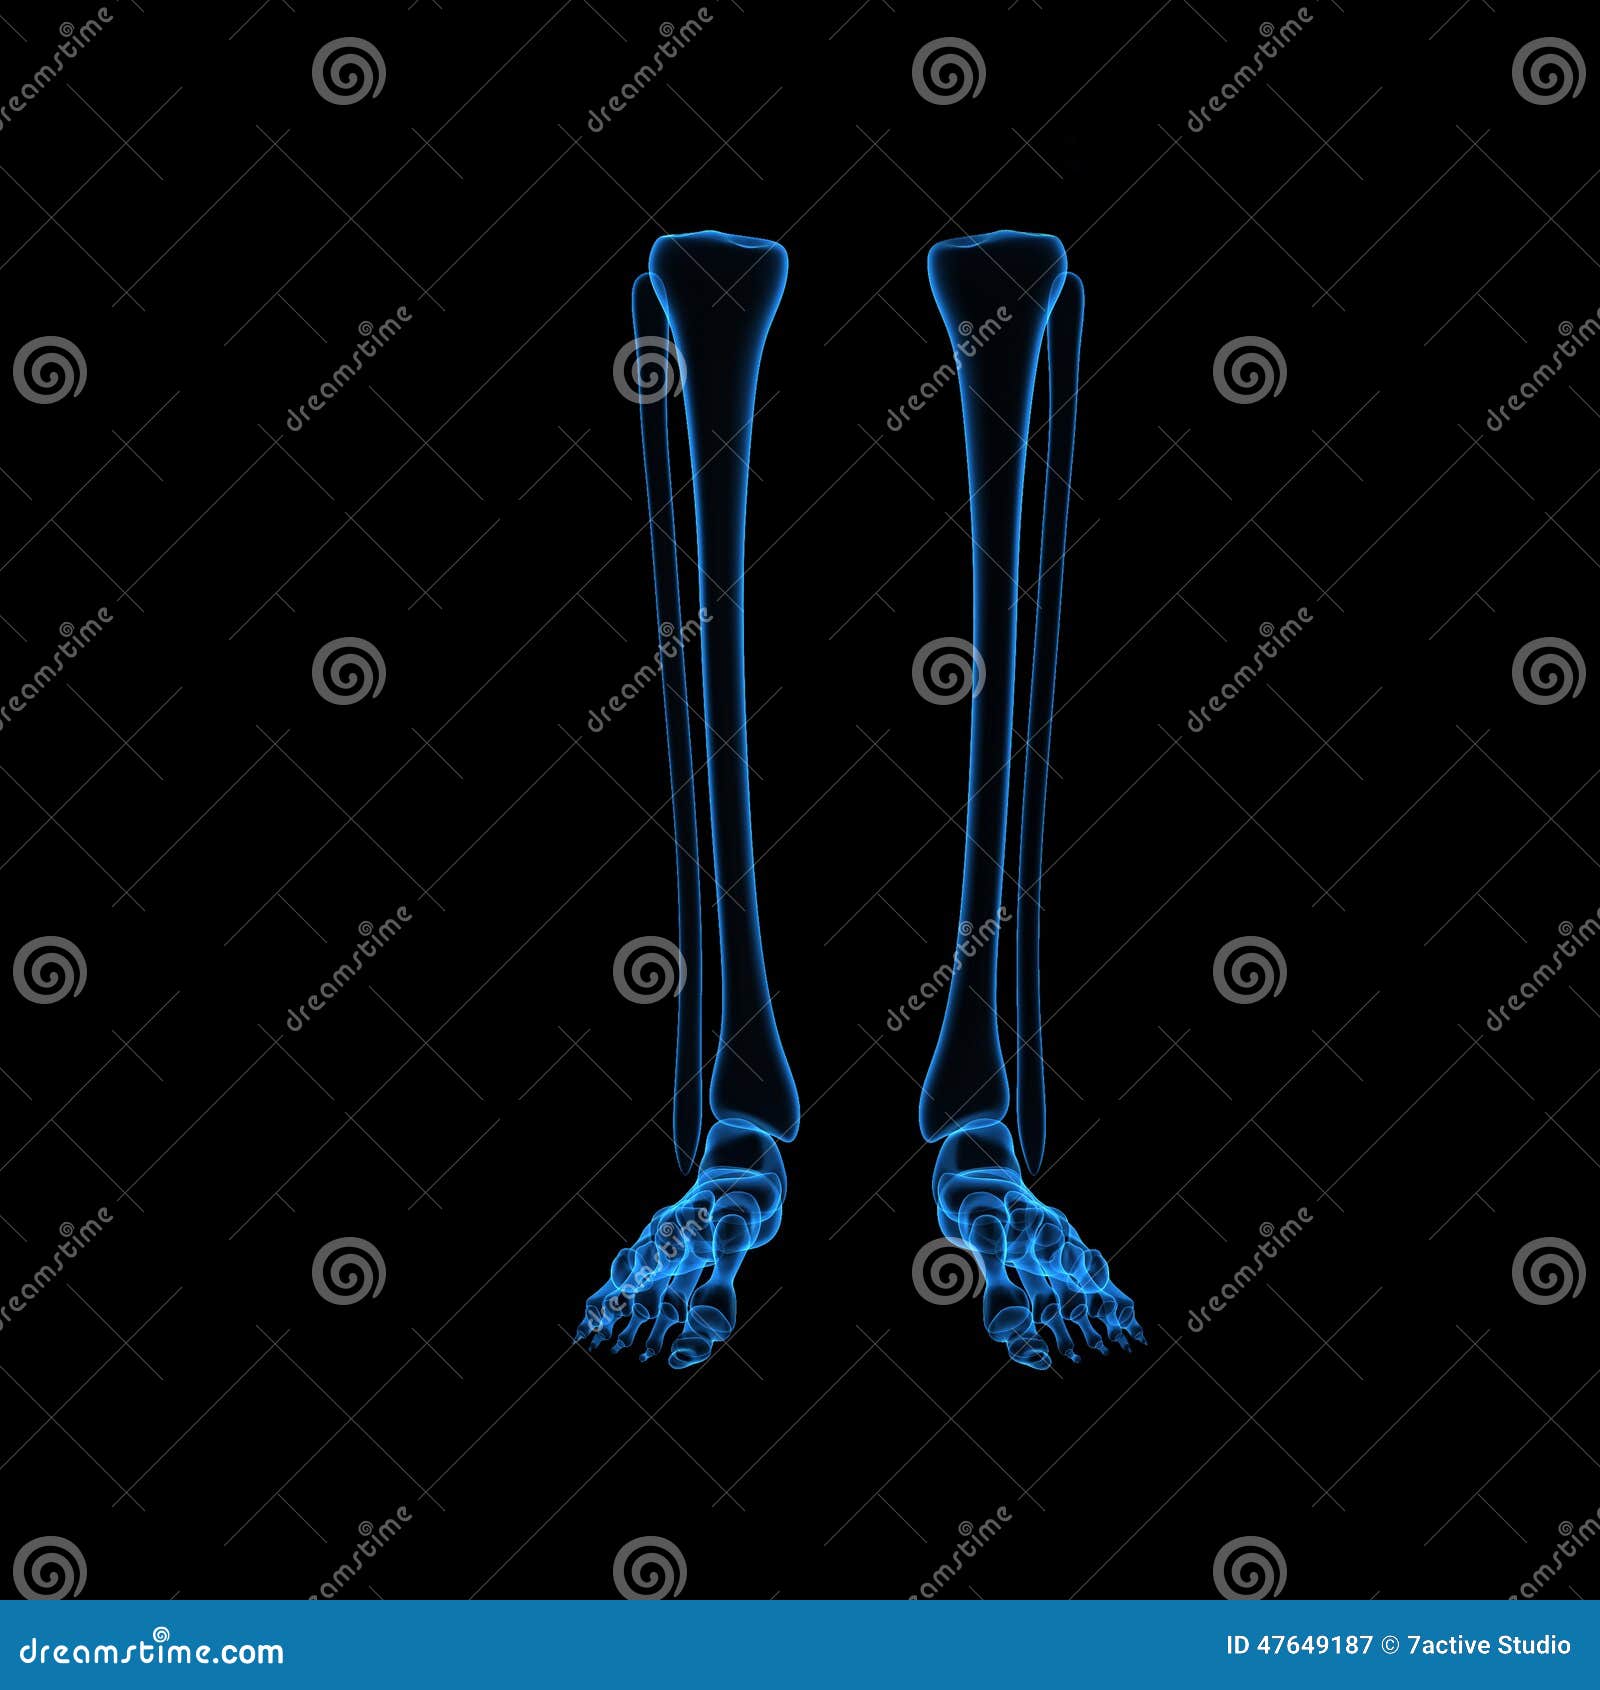 Pattes squelettiques. La jambe est la partie de l'extrémité inférieure qui les mensonges entre le genou et la cheville, la cuisse est entre la hanche et le genou et l'extrémité inférieure de terme est employé pour décrire la jambe familière